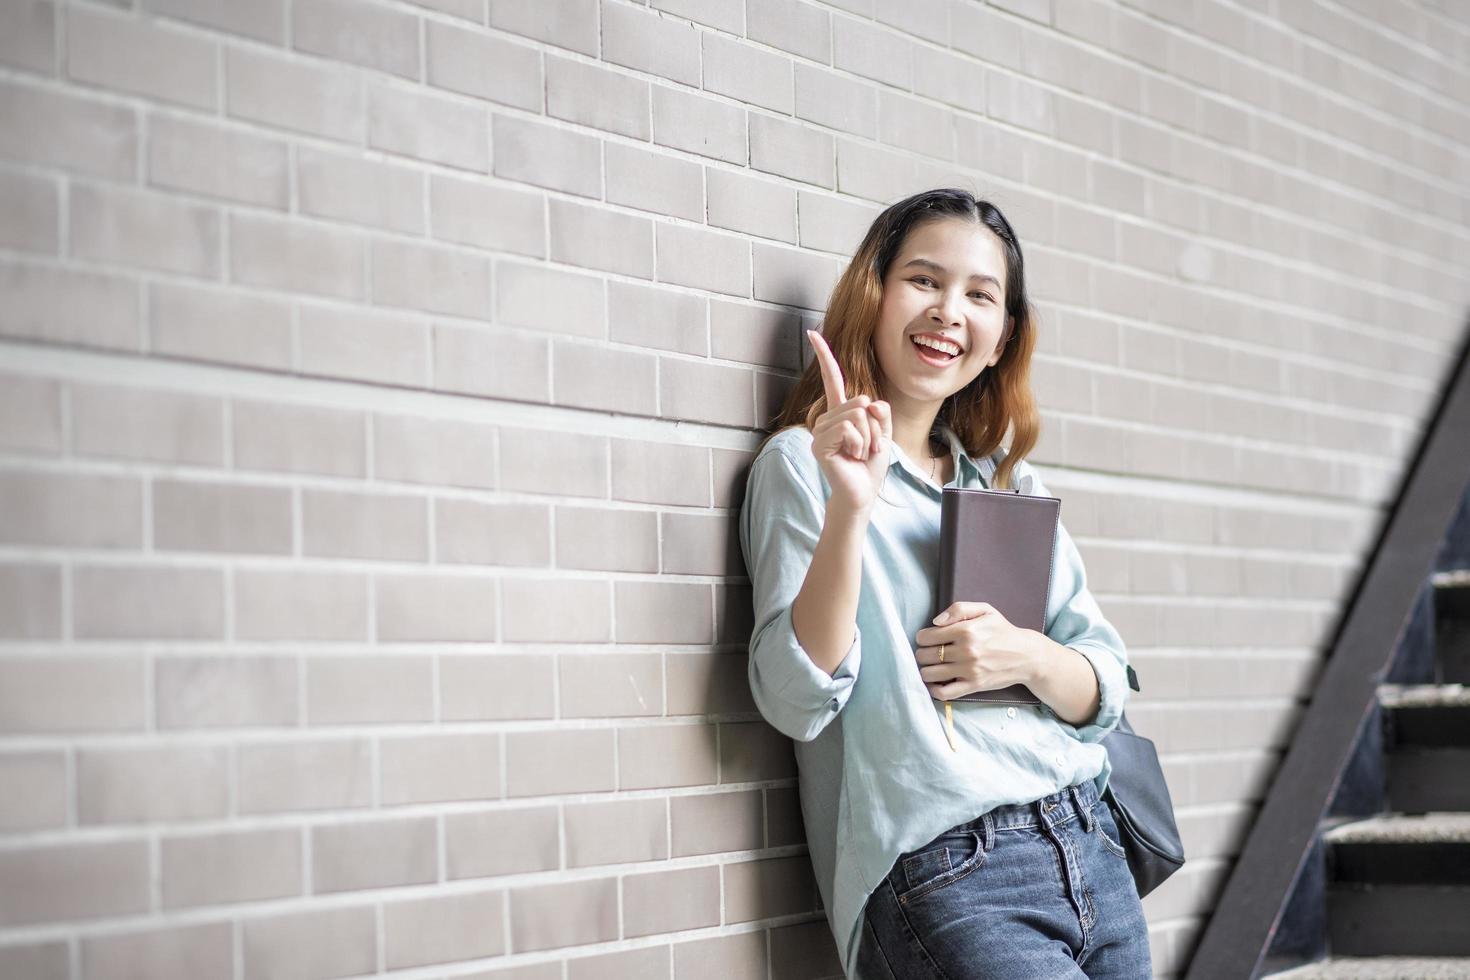 glücklicher junger asiatischer universitätsstudent. foto